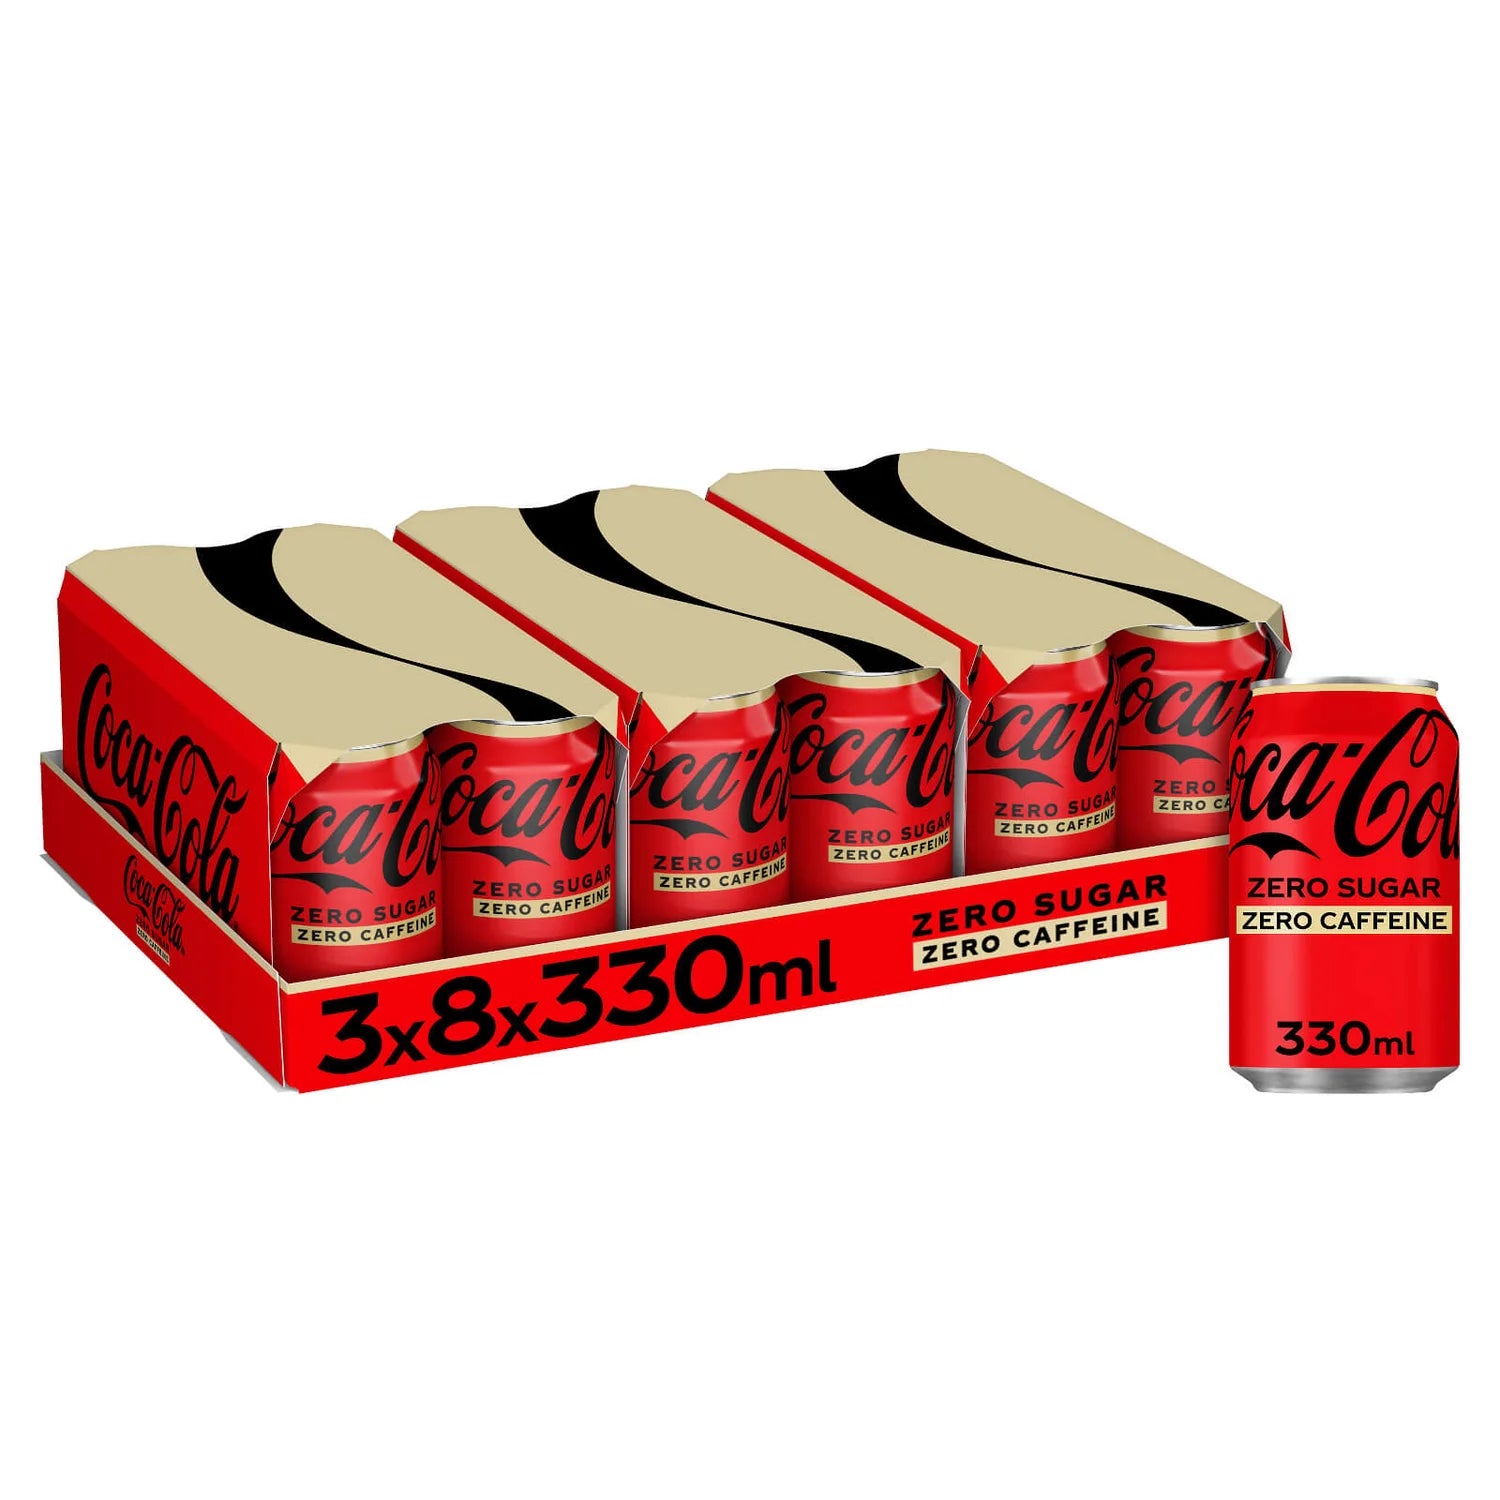 Coca-Cola Zero Sugar Zero Caffeine - 330ml - Case of 24